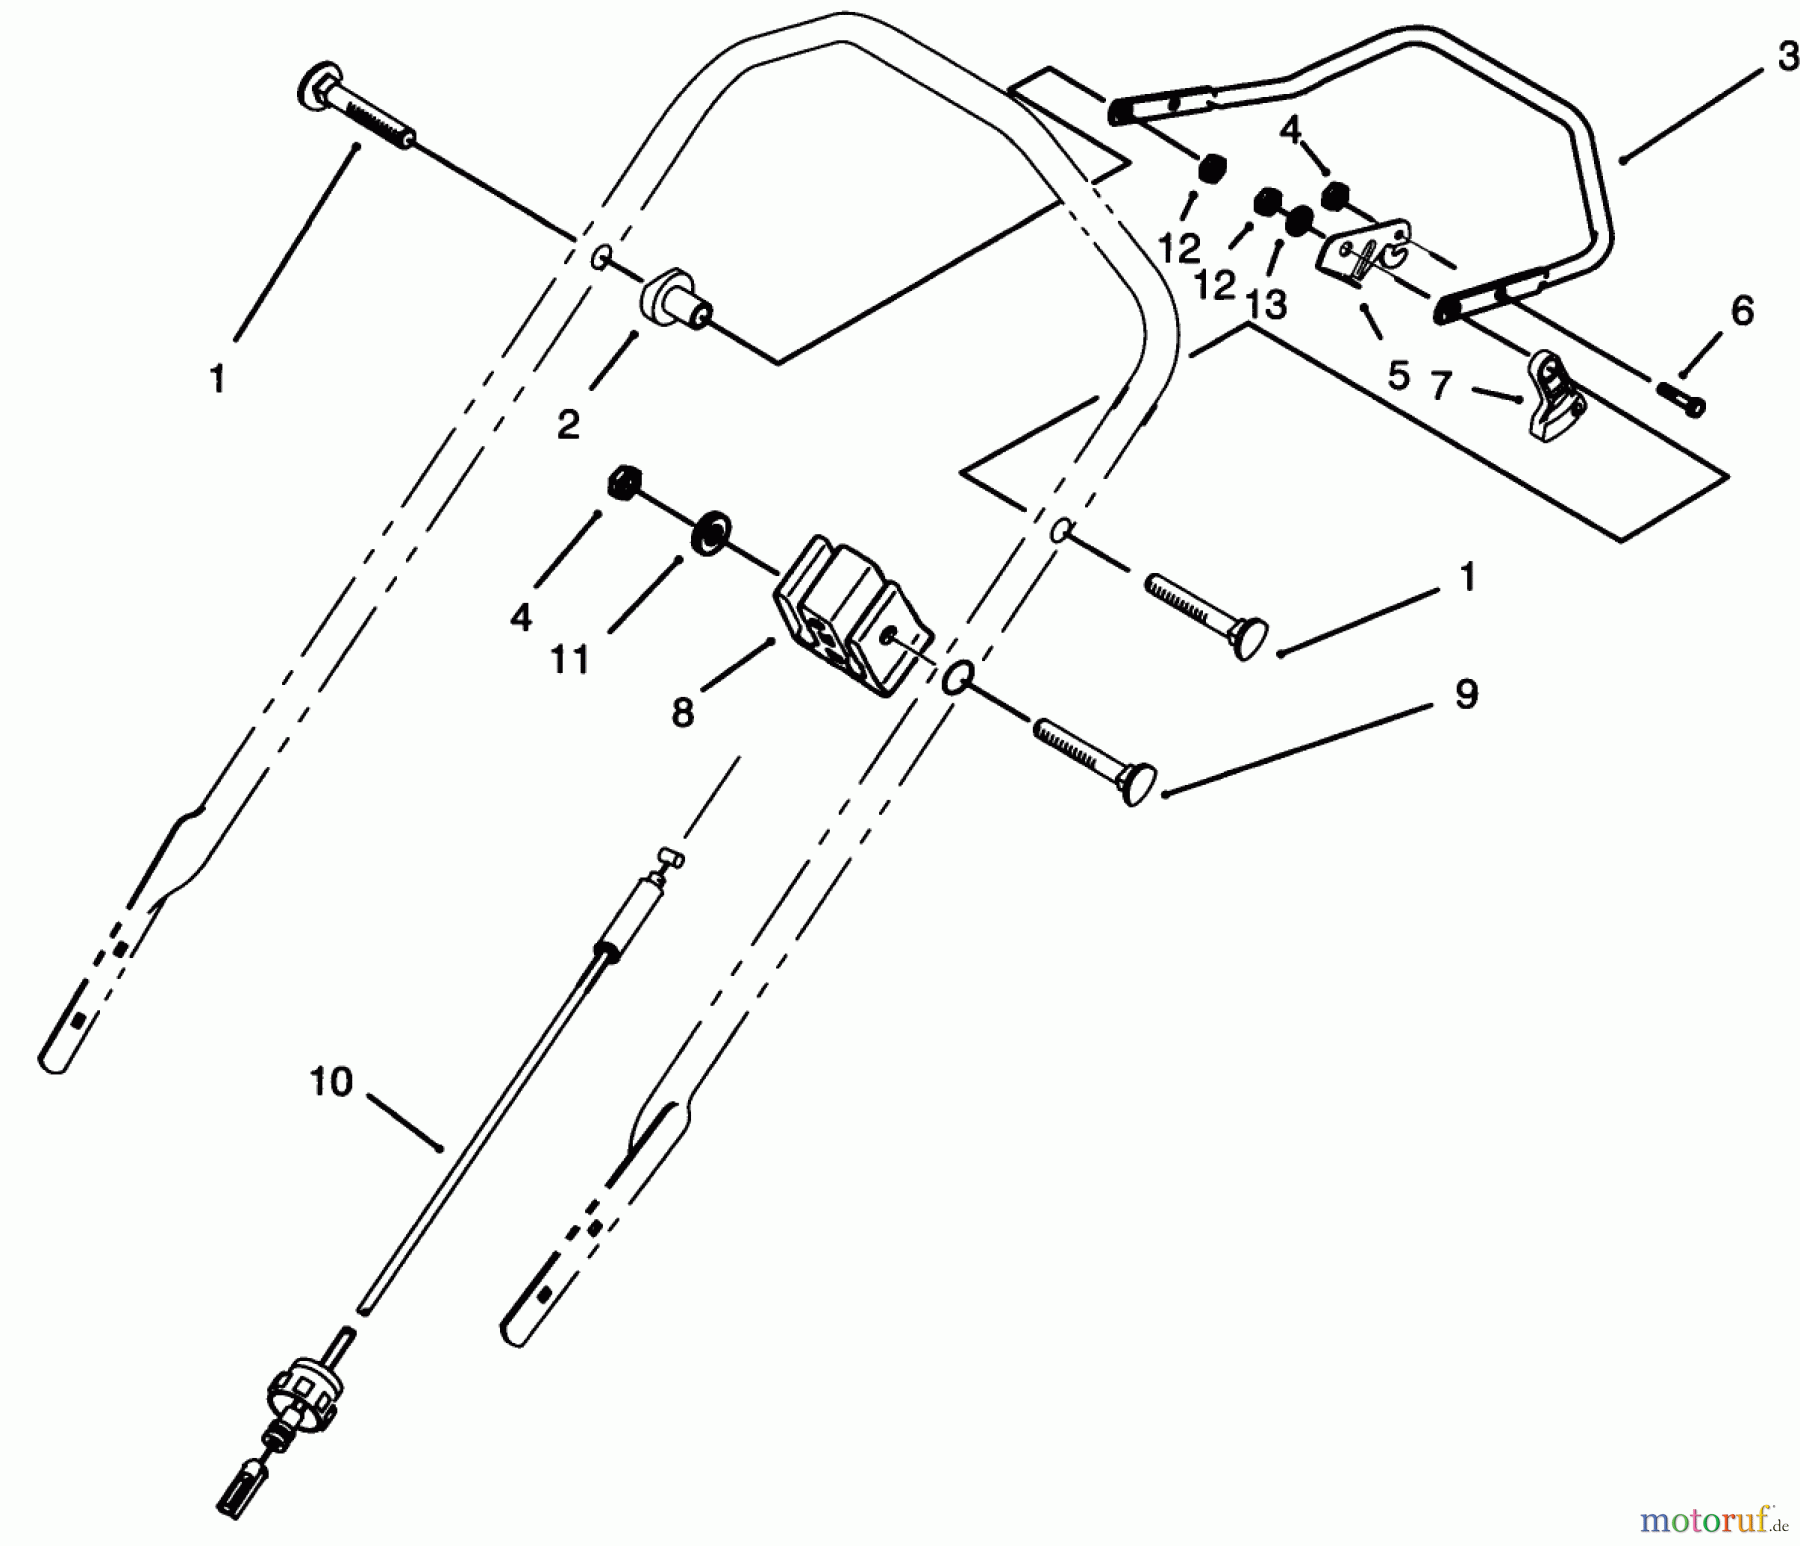  Toro Neu Mowers, Walk-Behind Seite 2 26630BG - Toro Lawnmower, 1993 (3900001-3999999) TRACTION CONTROL ASSEMBLY